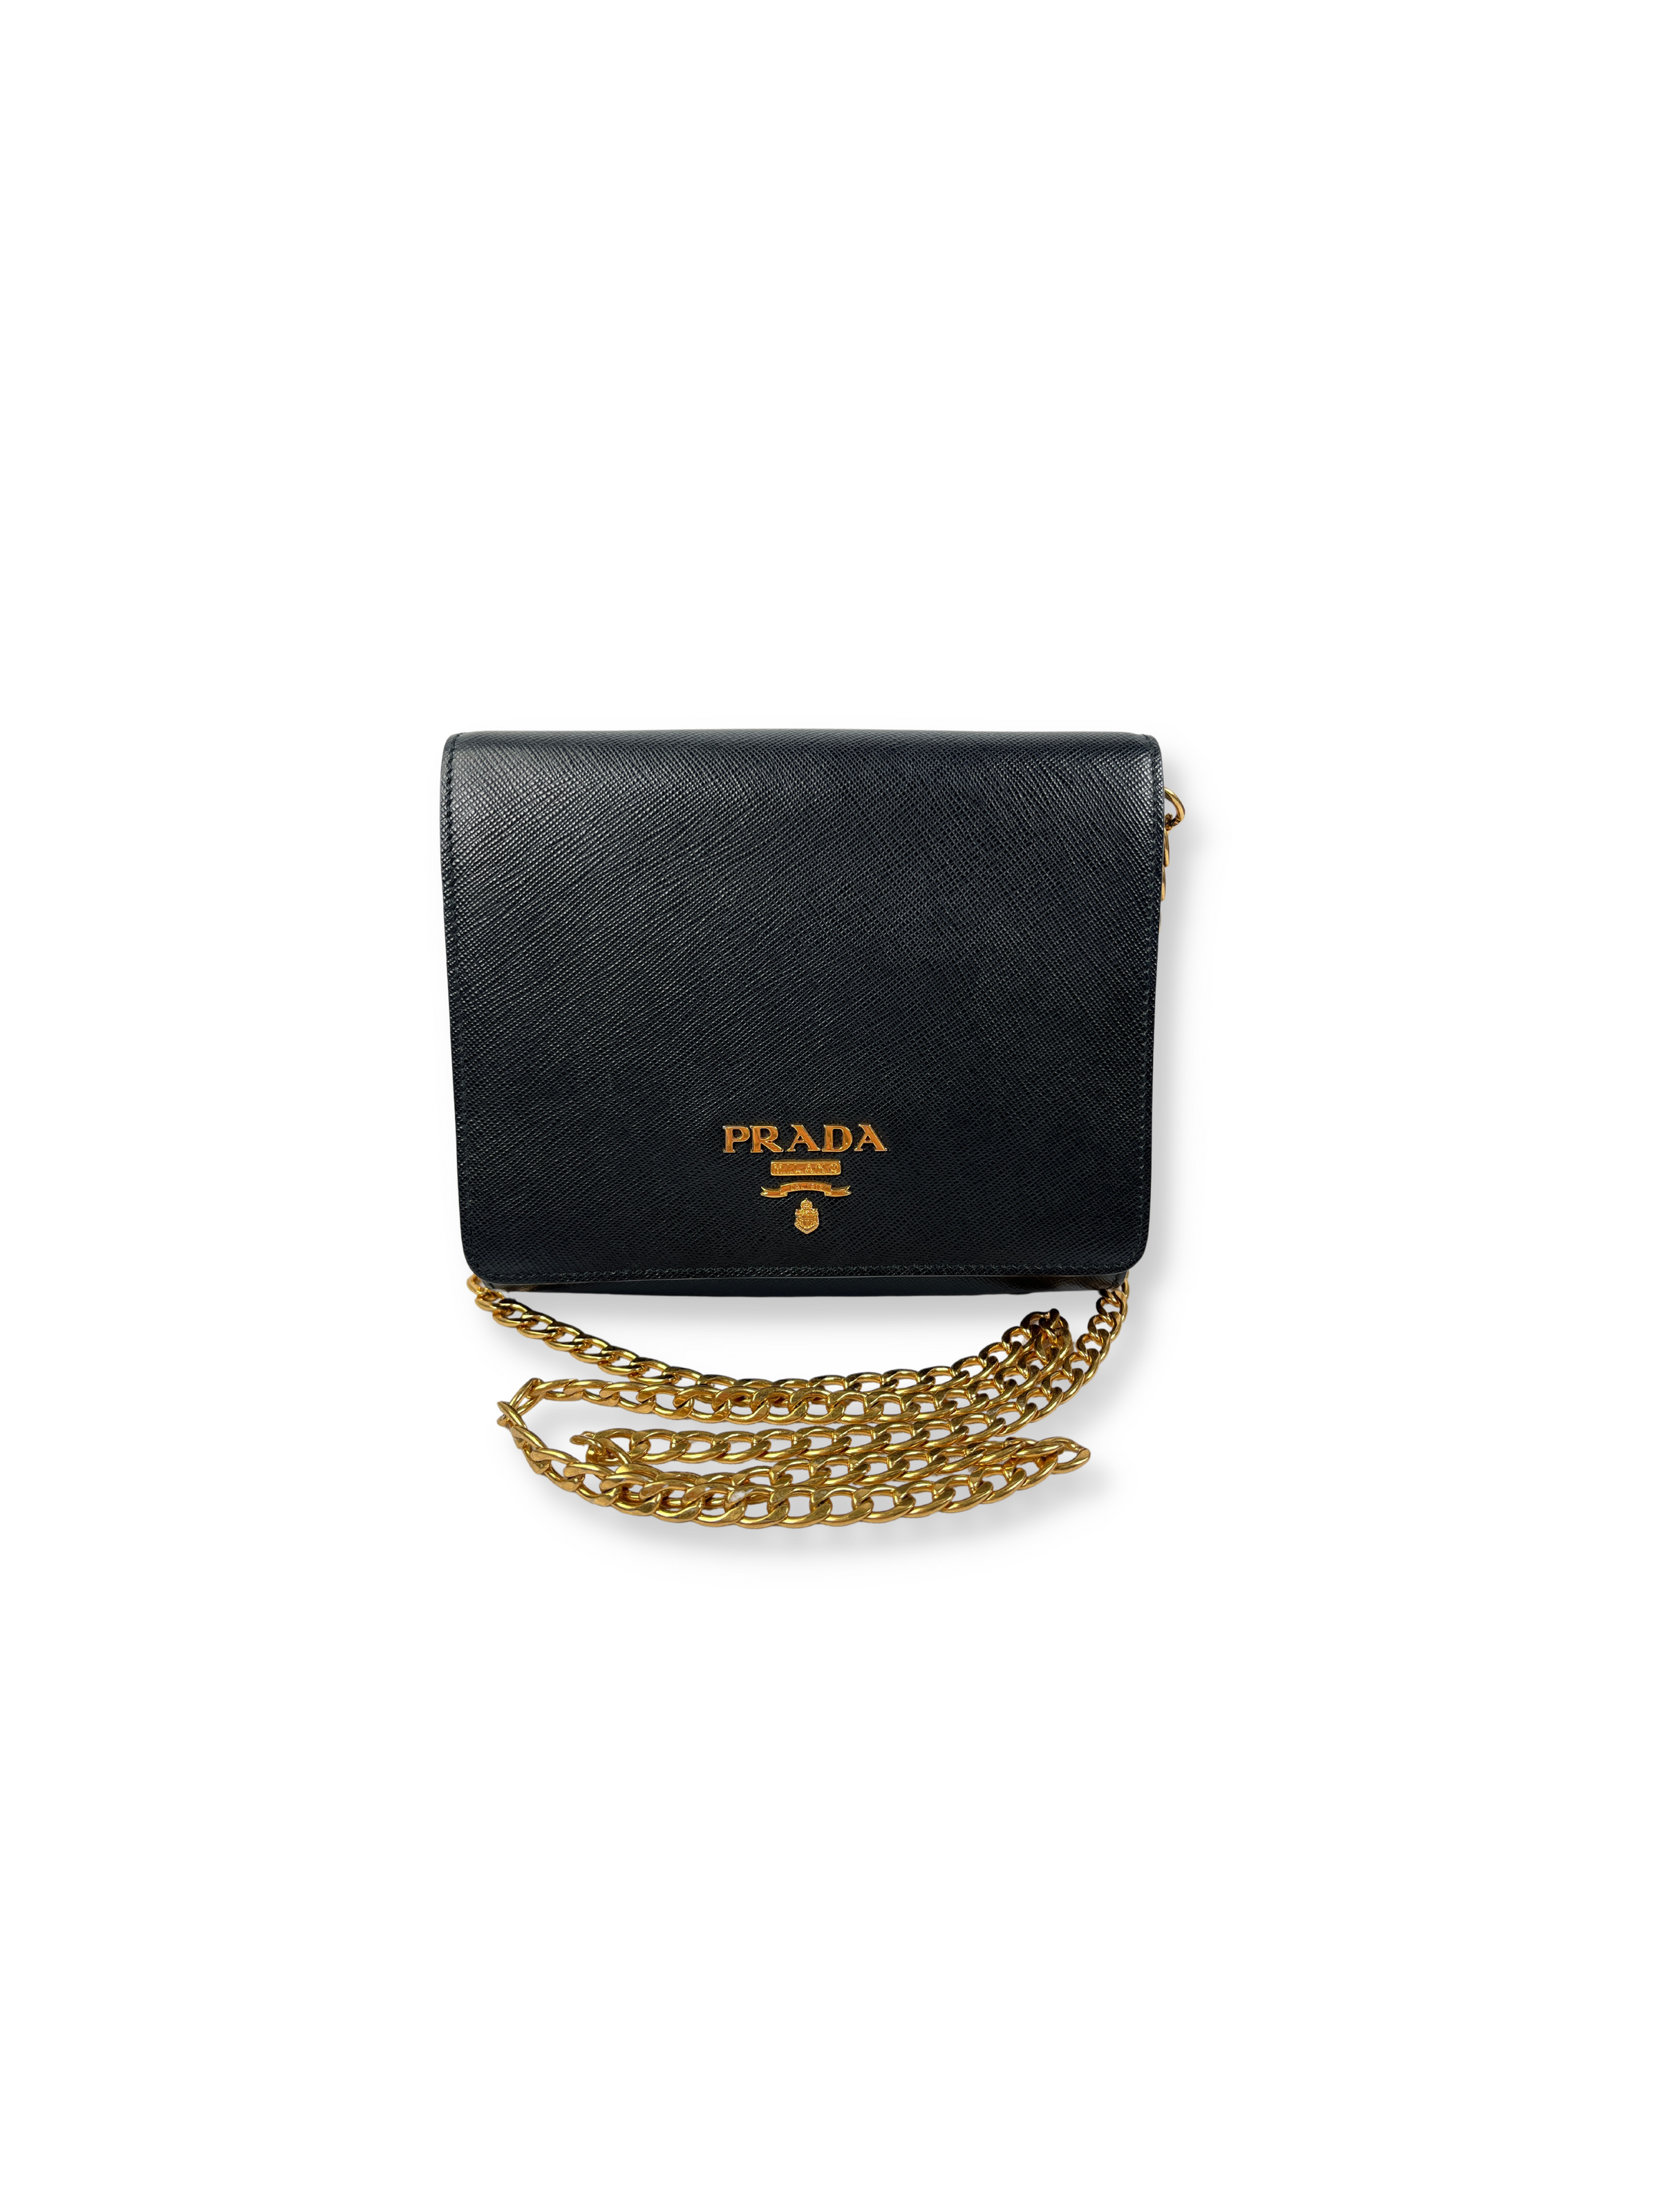 Prada Saffiano Lux Small Sound Flap Shoulder Bag